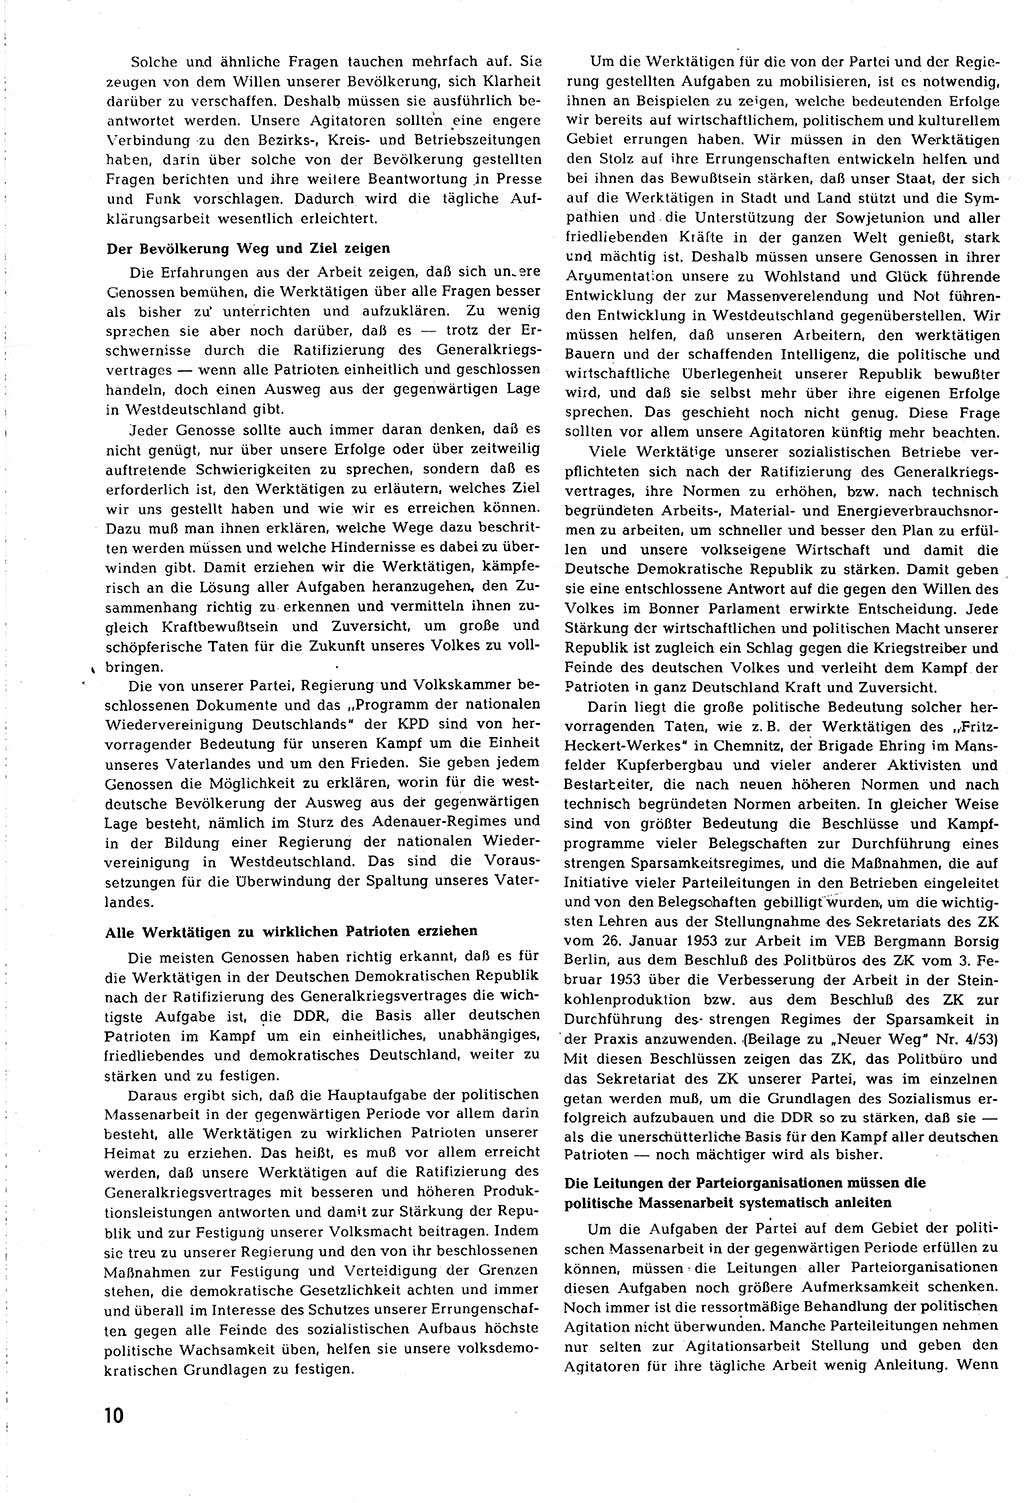 Neuer Weg (NW), Organ des Zentralkomitees (ZK) [Sozialistische Einheitspartei Deutschlands (SED)] für alle Parteiarbeiter, 8. Jahrgang [Deutsche Demokratische Republik (DDR)] 1953, Heft 8/10 (NW ZK SED DDR 1953, H. 8/10)